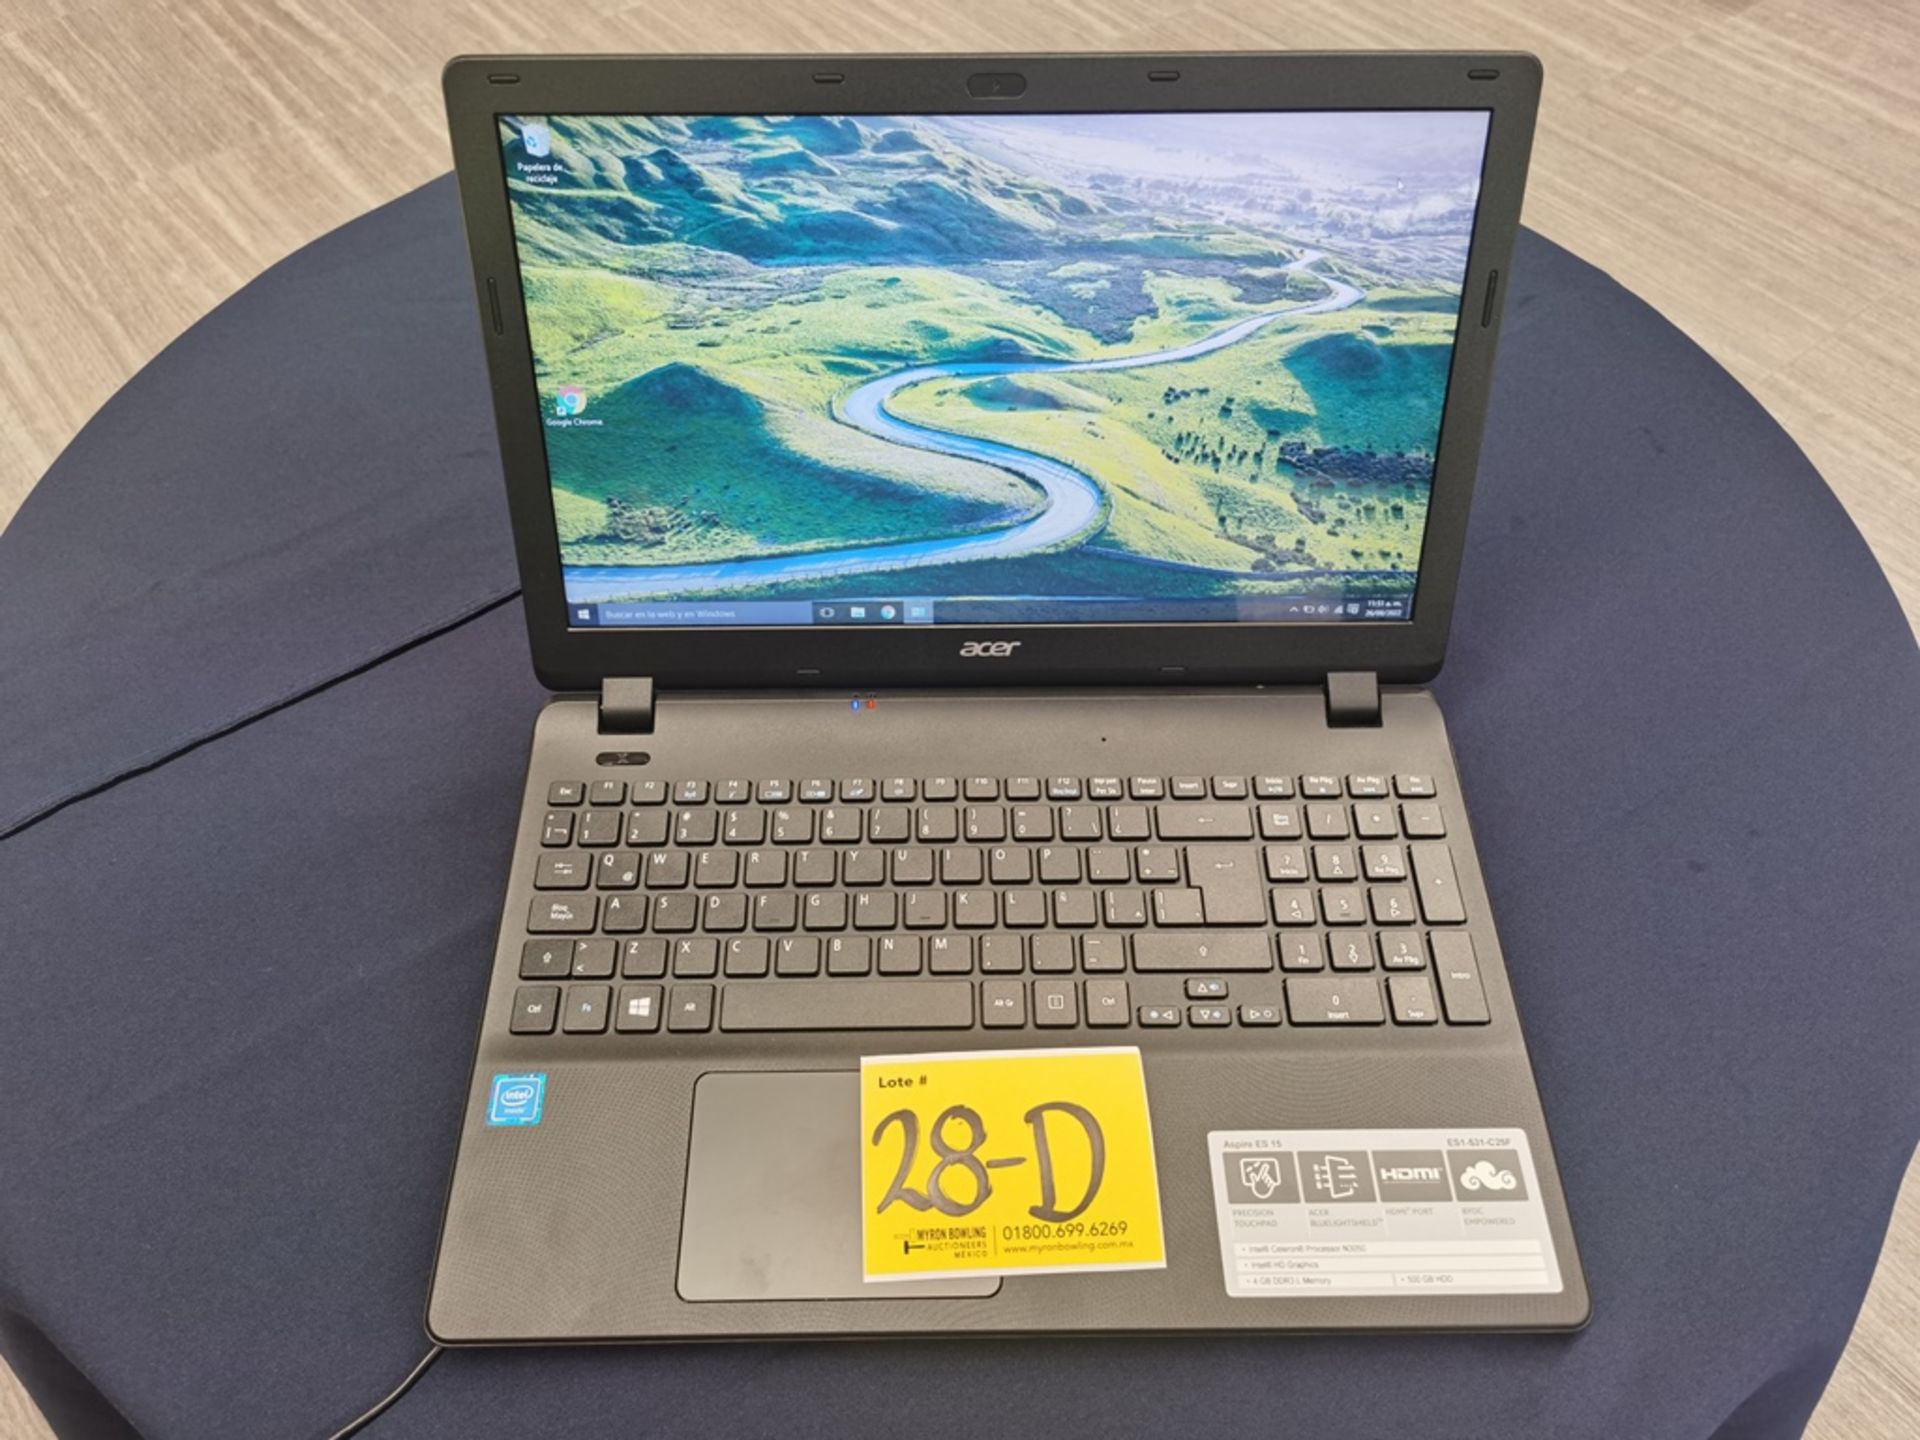 1 Computadora tipo Laptop Marca Acer Modelo Aspire ES1-531-C25F, Serie NXMZ8AL029629008866600, Colo - Image 2 of 11